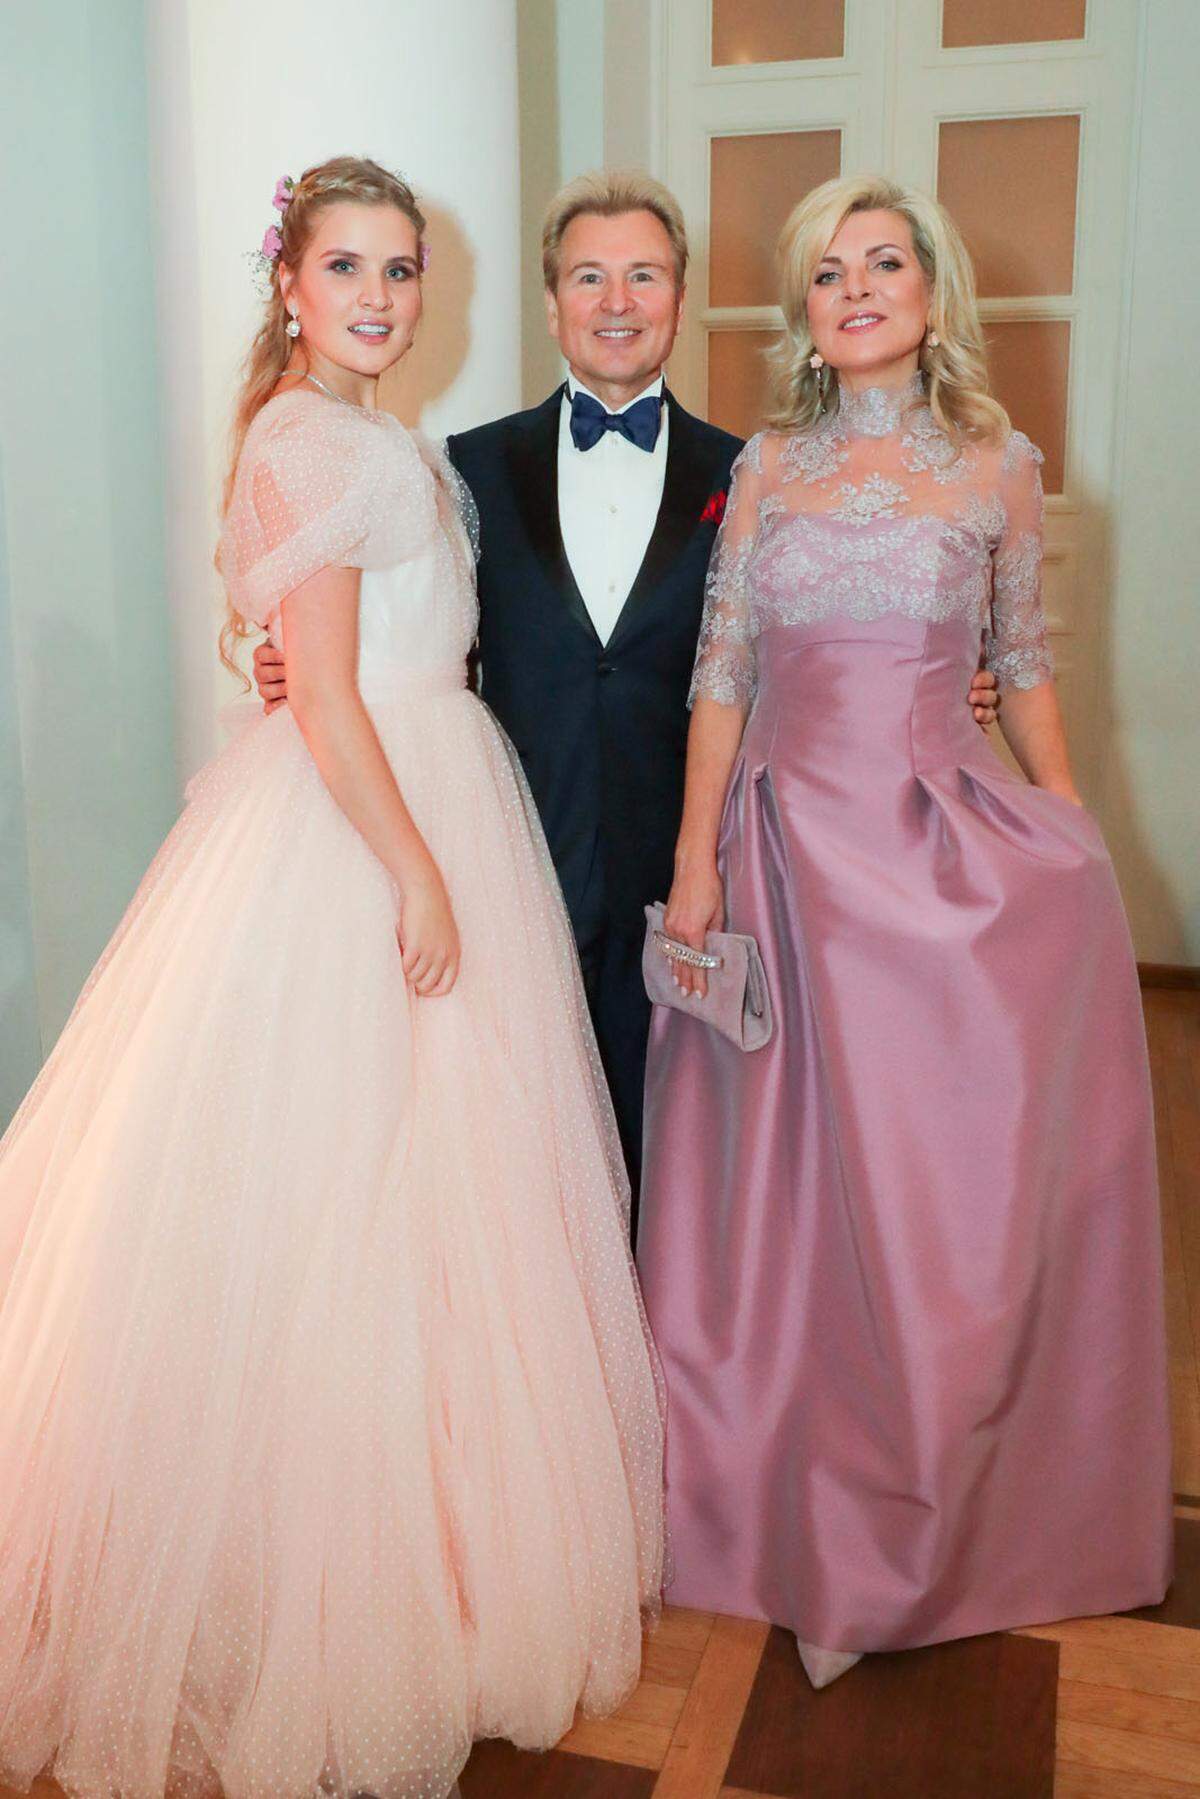 Sänger Alexander Malinin mit Ehefrau Emma und Tochter Ustinya.